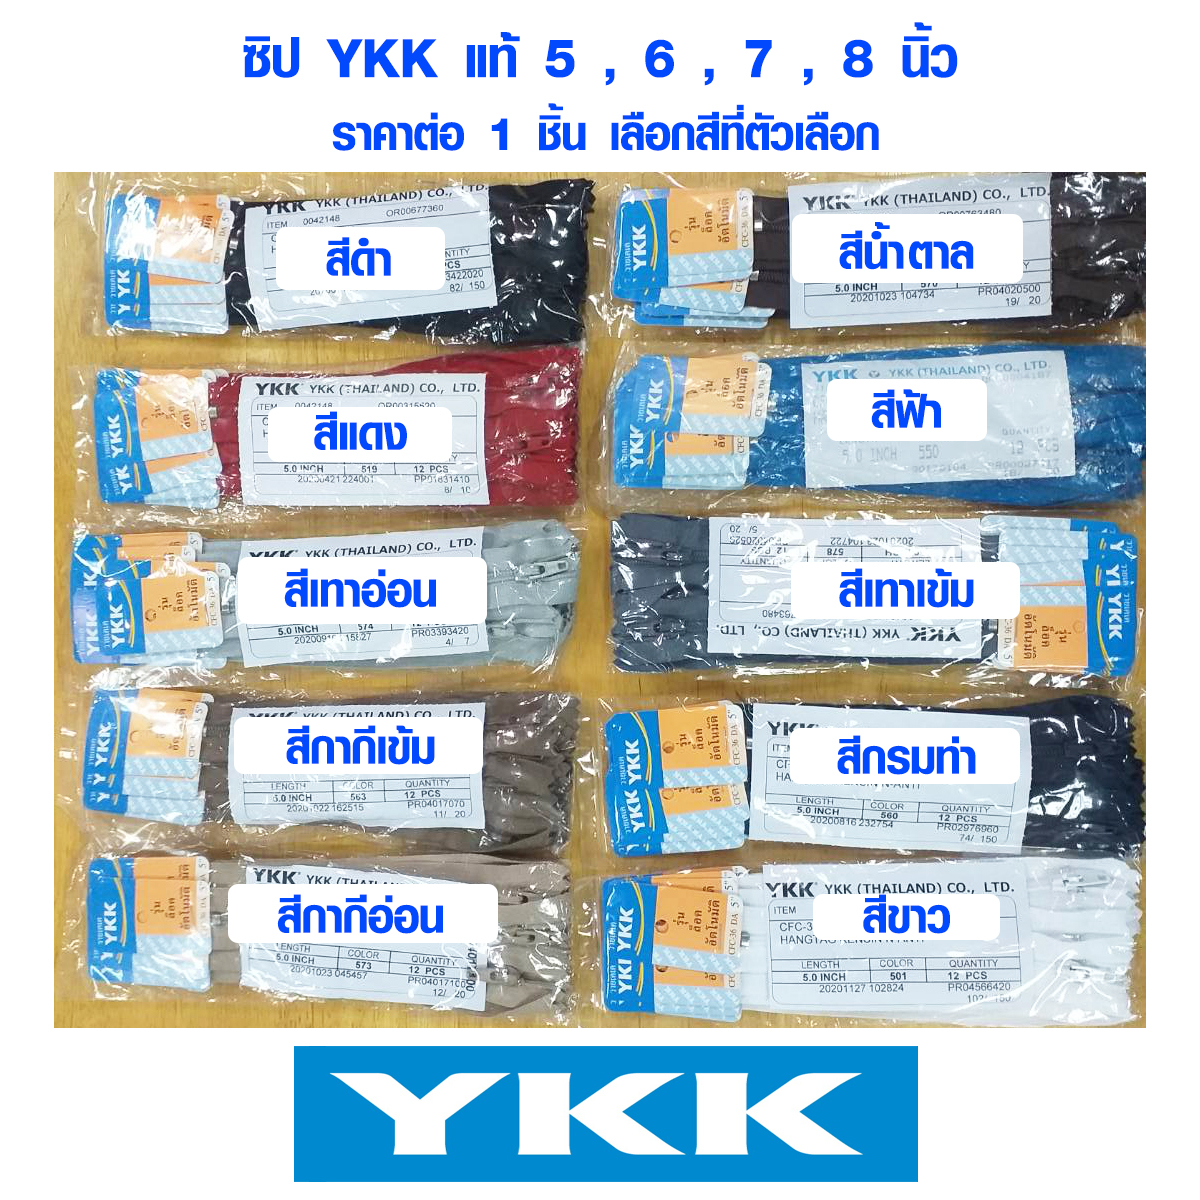 ซิป YKK แท้ 5 , 6 , 7 , 8 นิ้ว มี 10 สี รุ่นล็อคอัตโนมัติ ซิปอย่างดี ซิปล็อค ซิปกางเกง ซิปกระโปรง ซิปกระเป๋า ซิบ